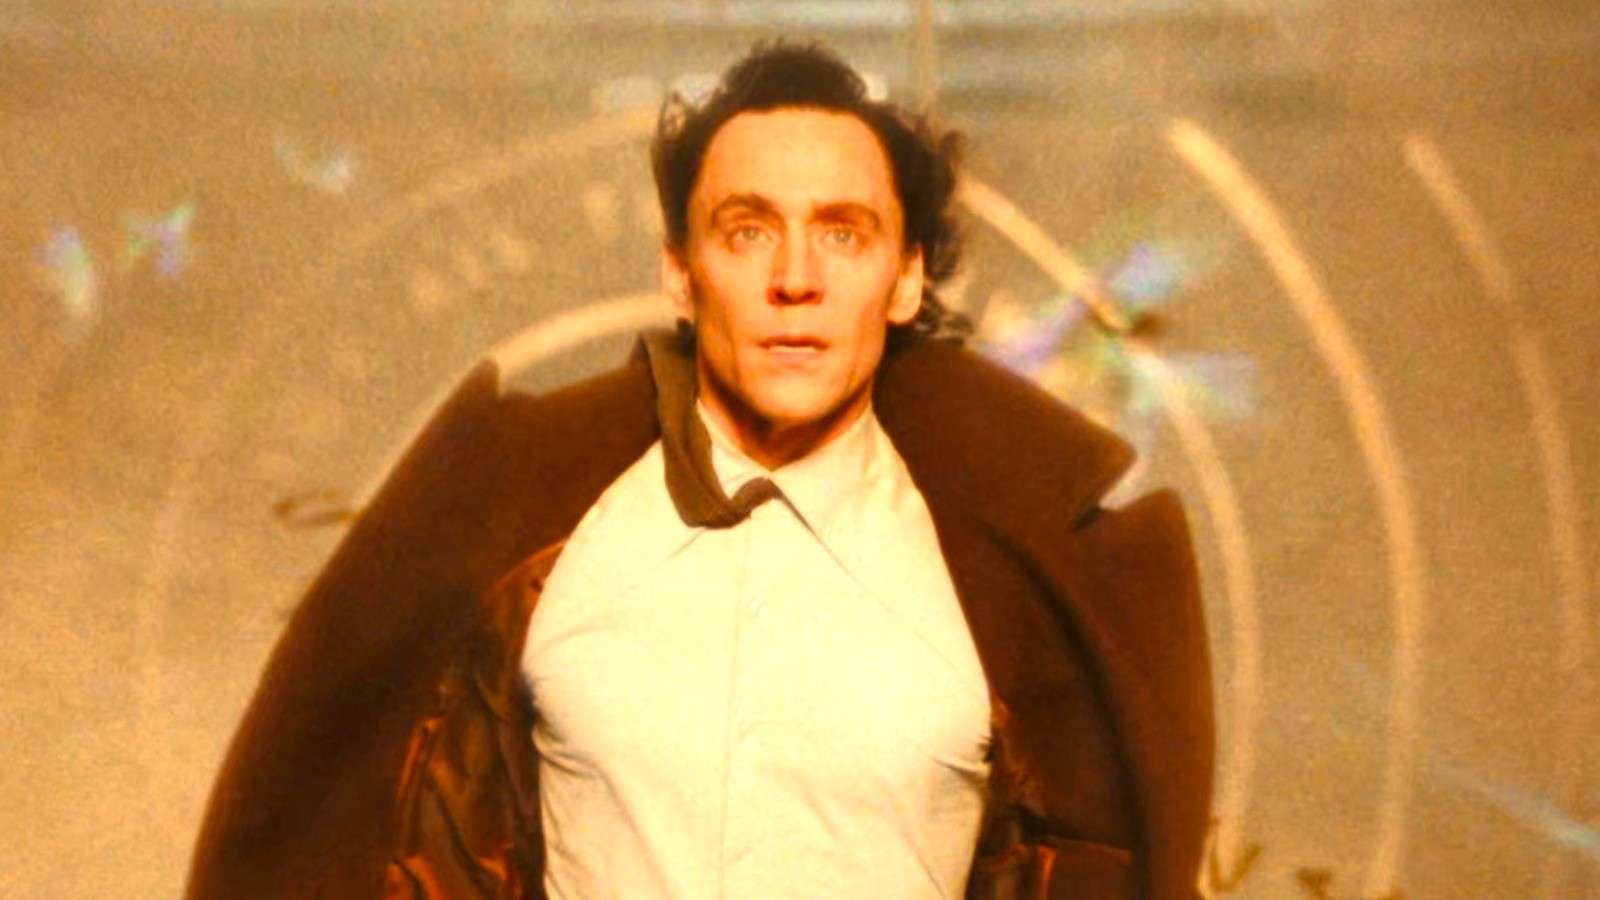 Tom Hiddleston as Loki in the Season 2 finale